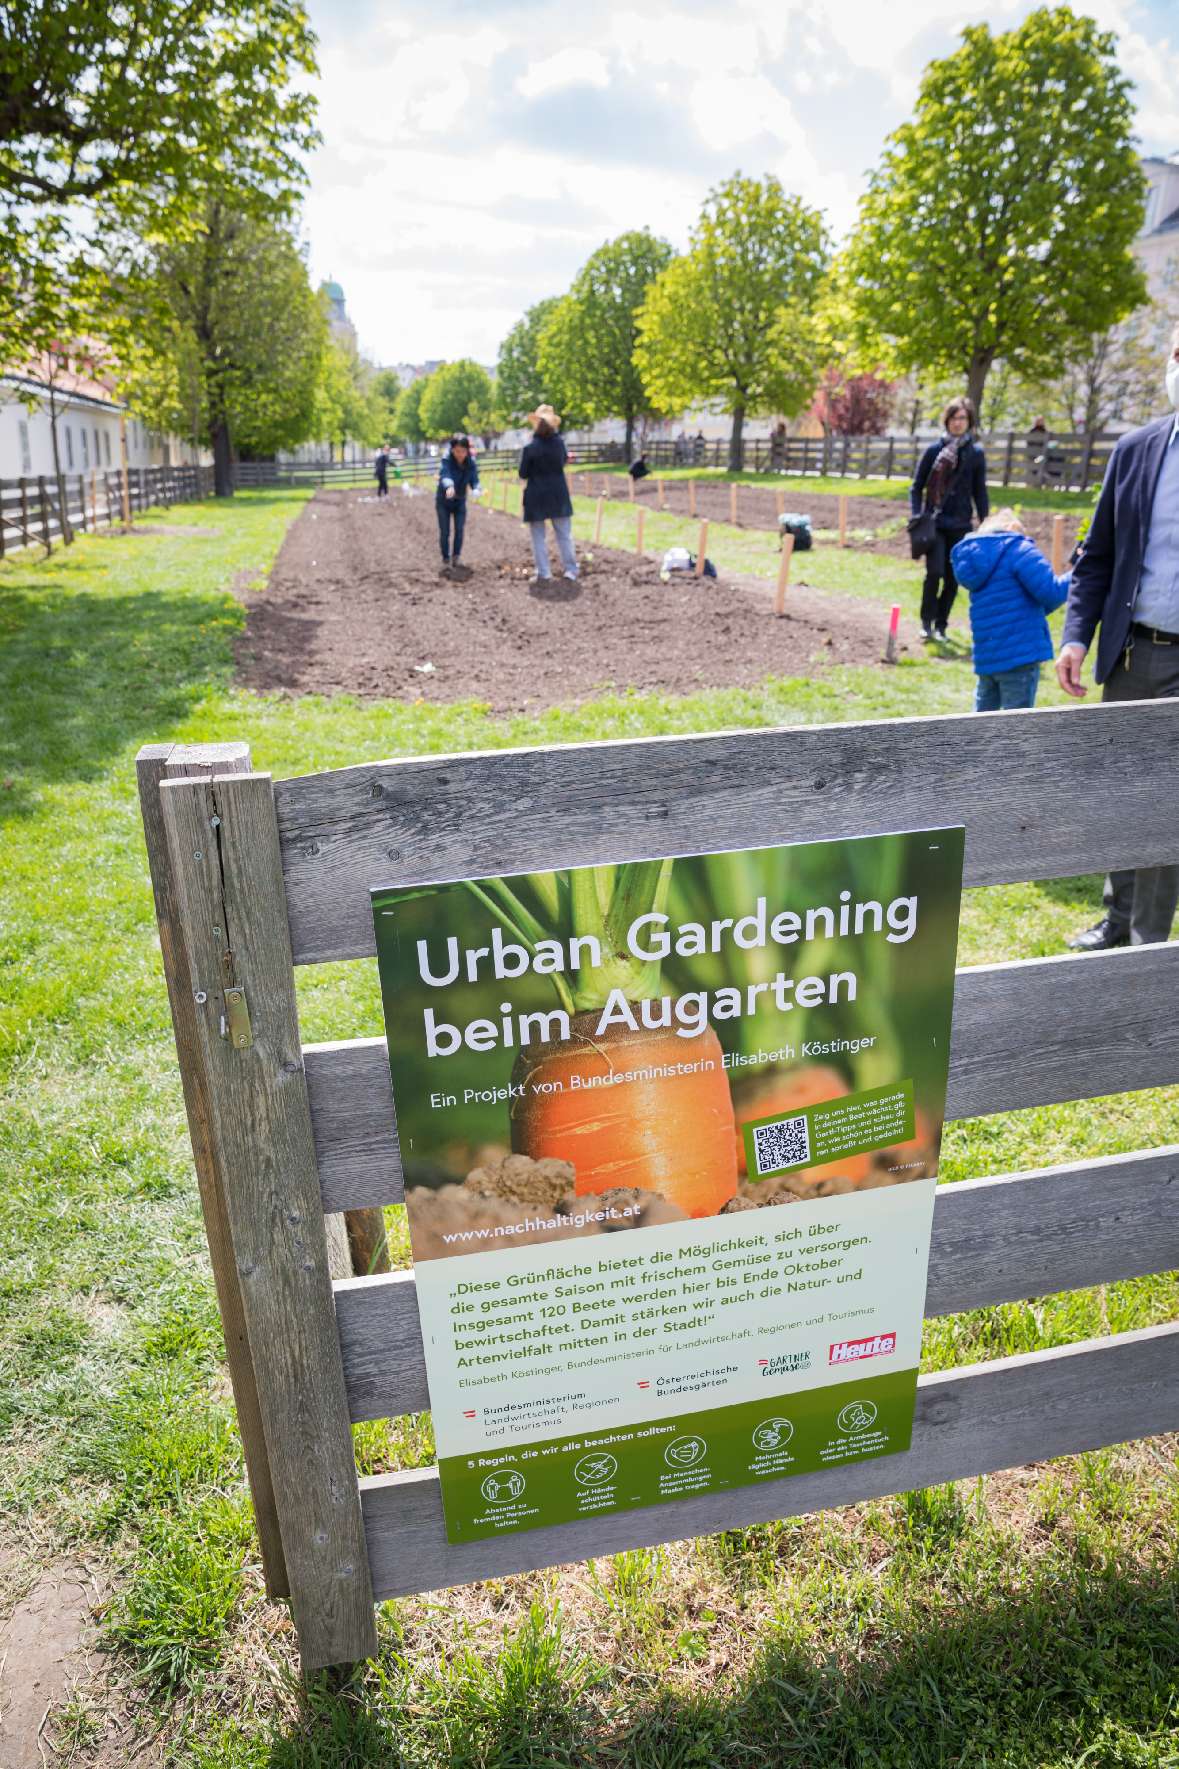 Eröffnung des Urban Gardening beim Augarten am 23. April 2021